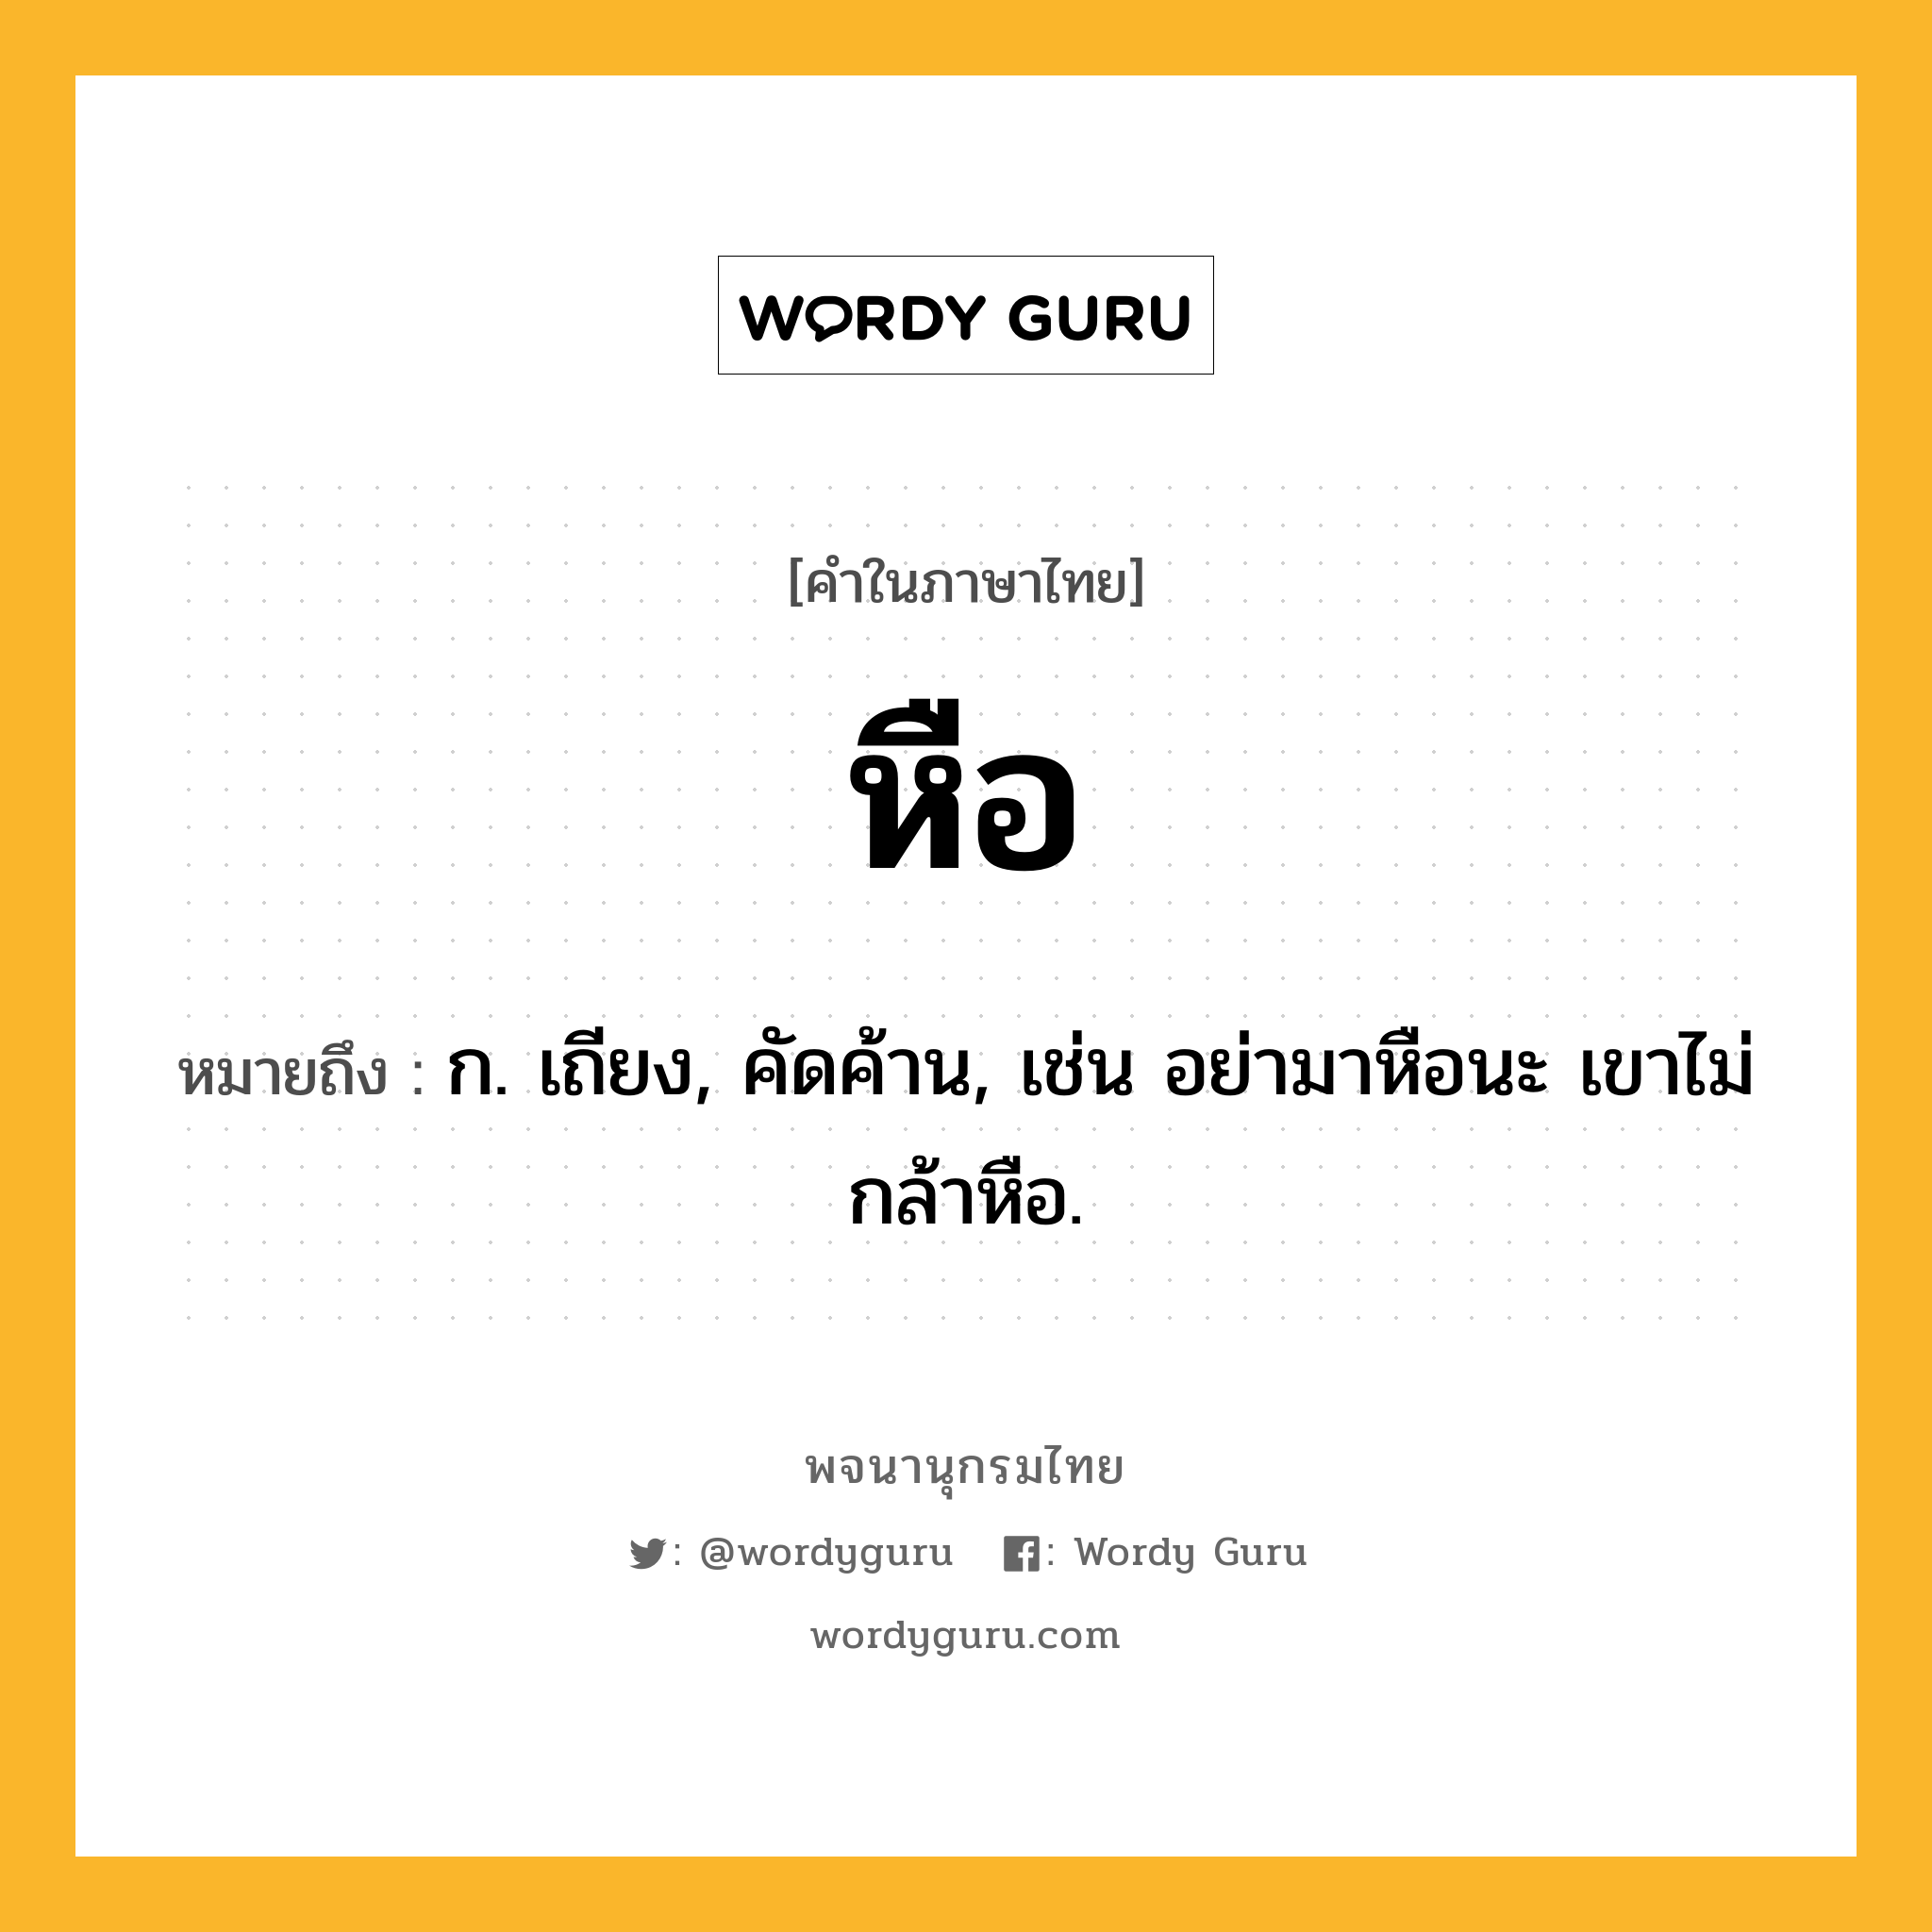 หือ ความหมาย หมายถึงอะไร?, คำในภาษาไทย หือ หมายถึง ก. เถียง, คัดค้าน, เช่น อย่ามาหือนะ เขาไม่กล้าหือ.